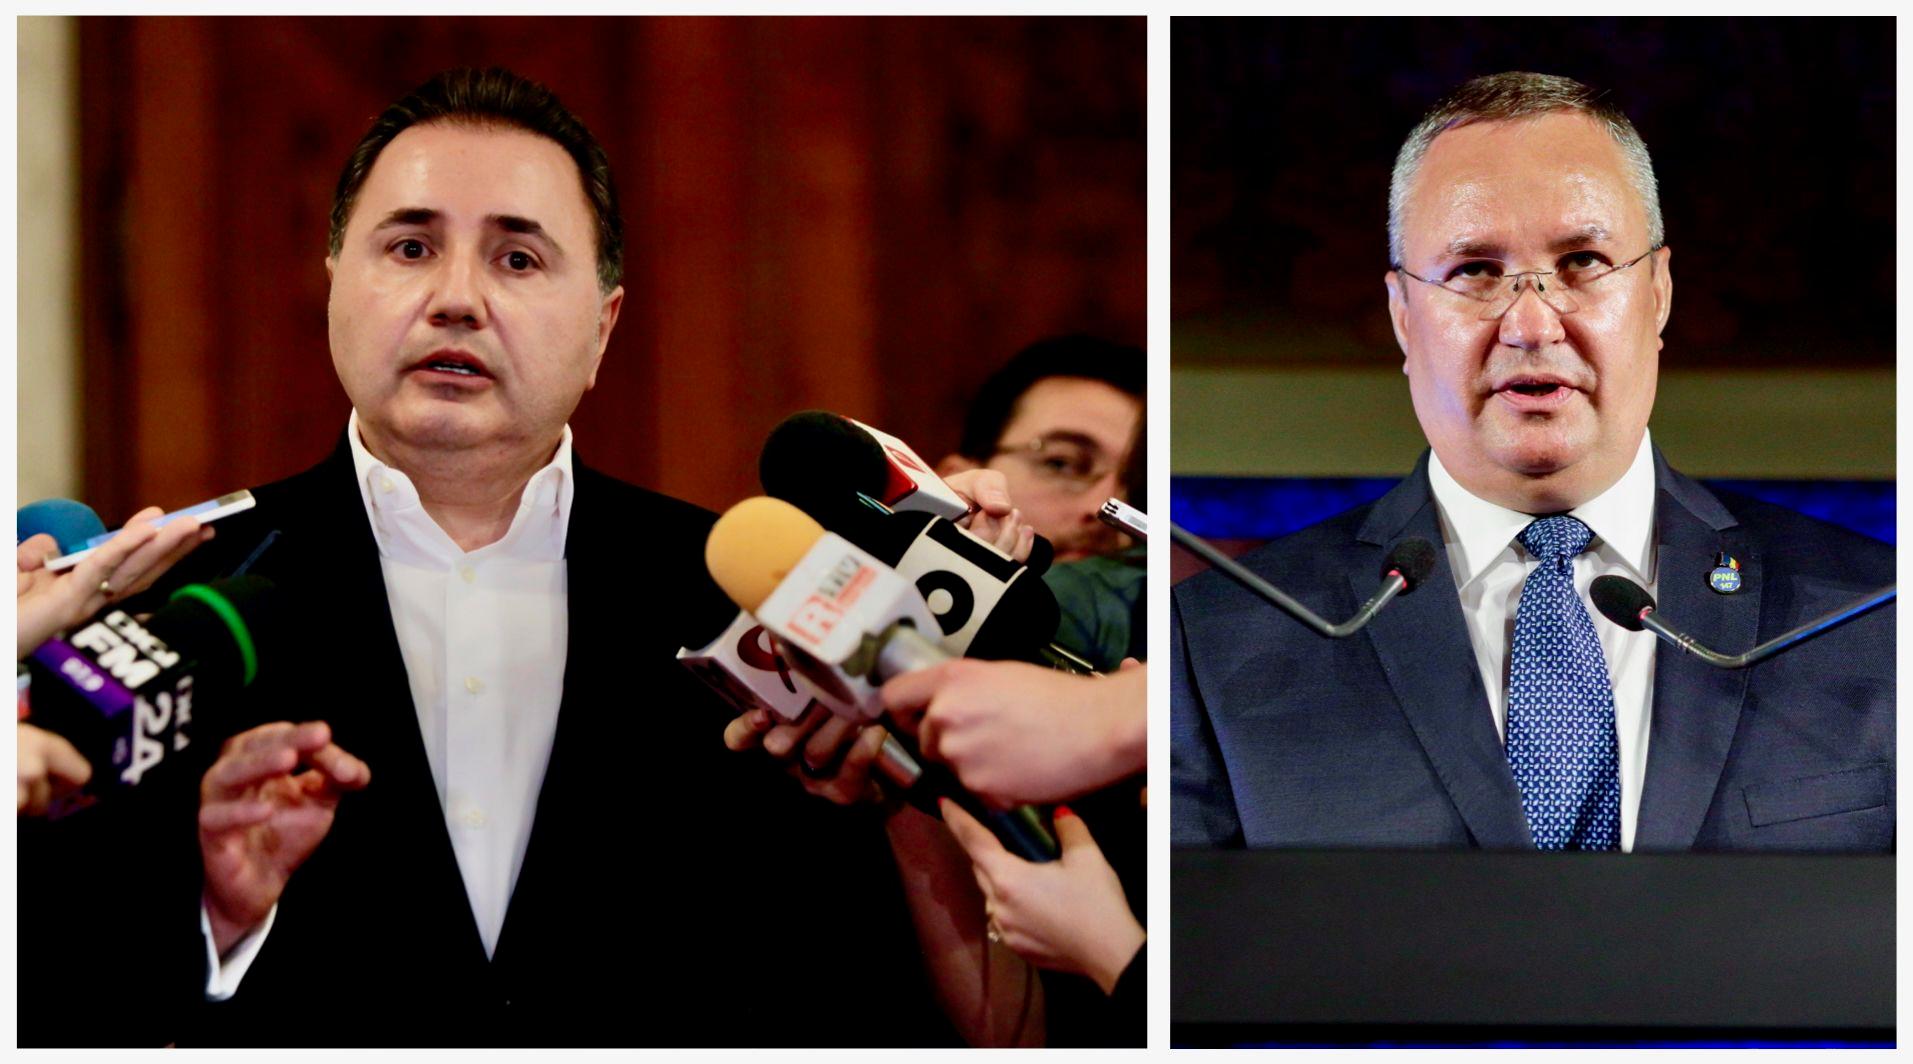 Fugarul condamnat penal Cristian Rizea (foto stânga) susține că “l-a salvat” pe premierul Nicolae Ciucă (foto dreapta). FOTO: INQUAM PHOTOS /  George Călin
